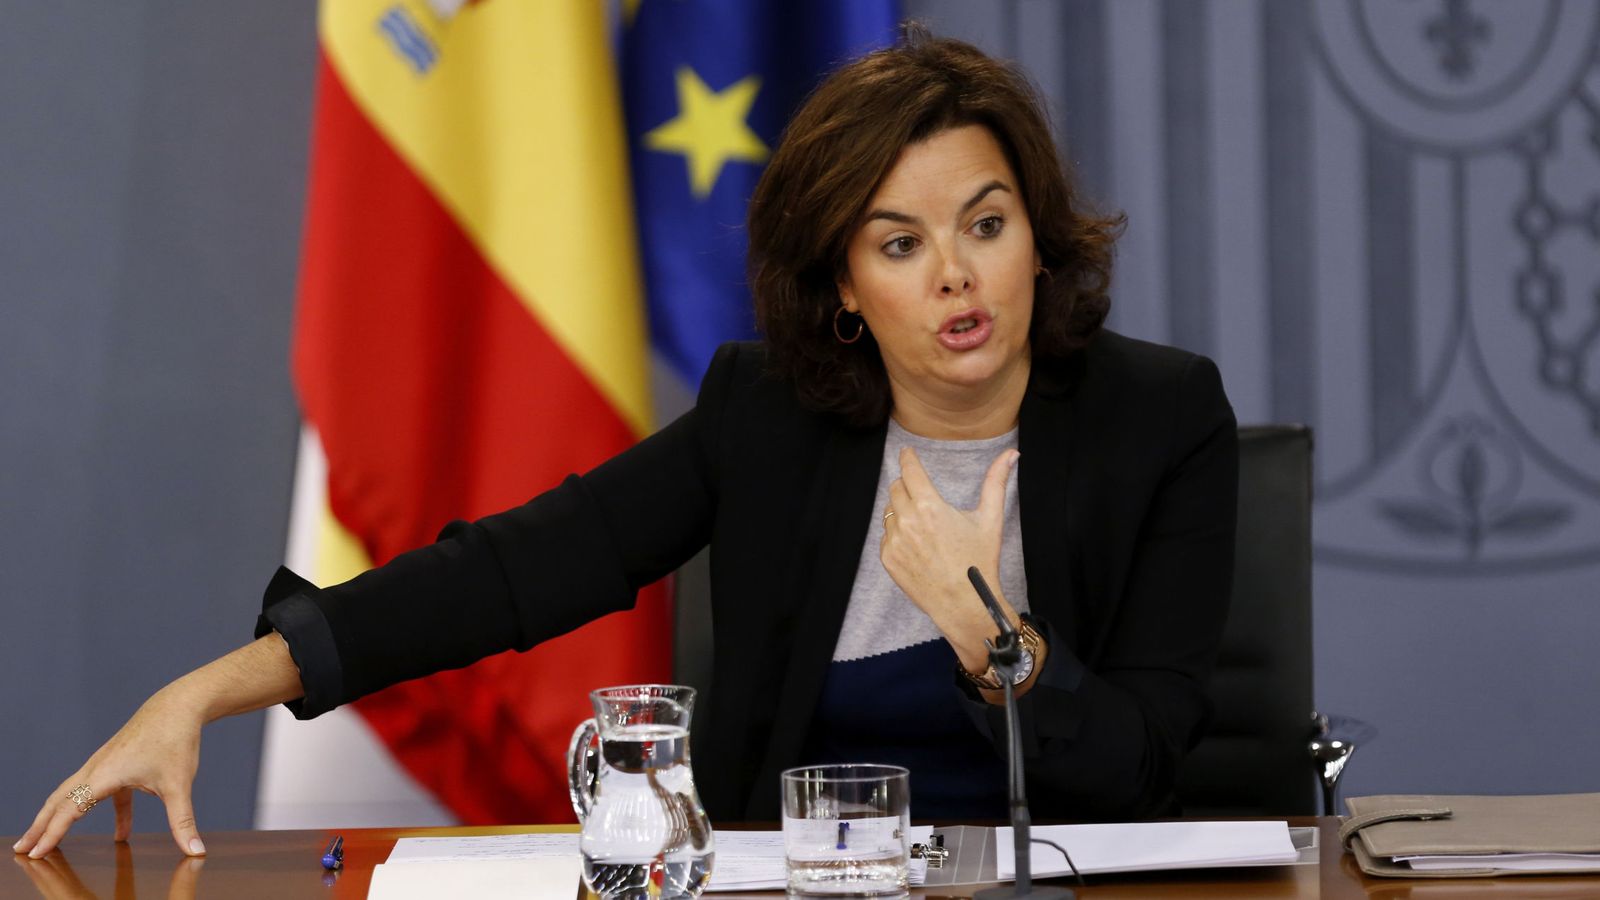 Foto: La vicepresidenta del Gobierno en funciones, Soraya Sáenz de Santamaría. (eFE)